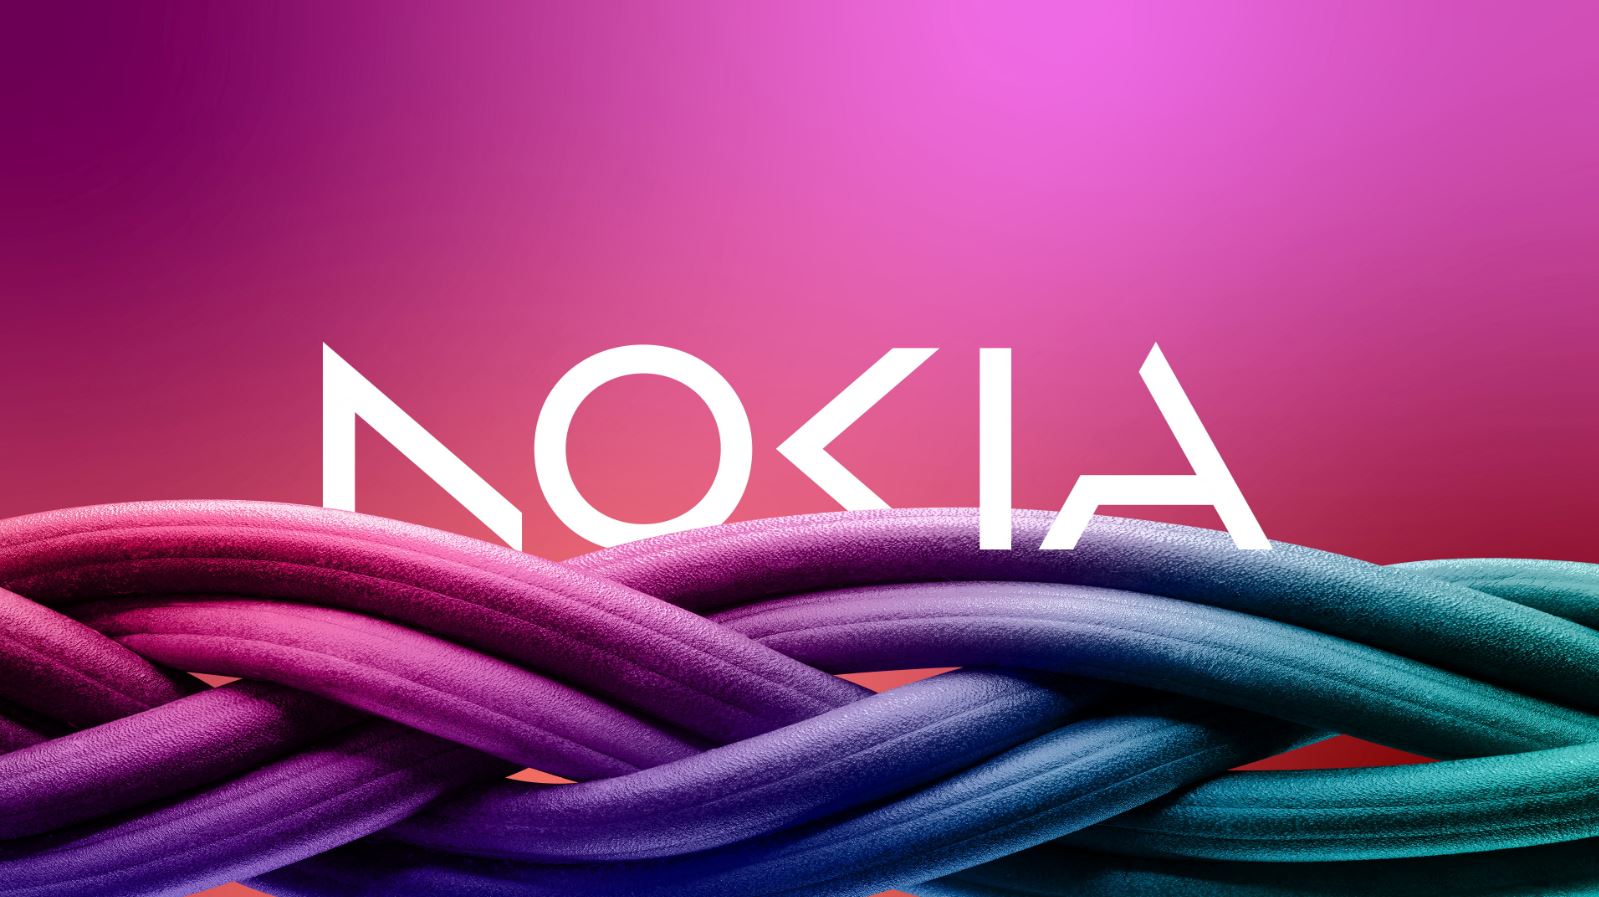 สุดยื้อ! Nokia เตรียมเลิกจ้างพนักงานถึง 14,000 ตำแหน่ง เพราะรายได้ที่ลดลง 20%